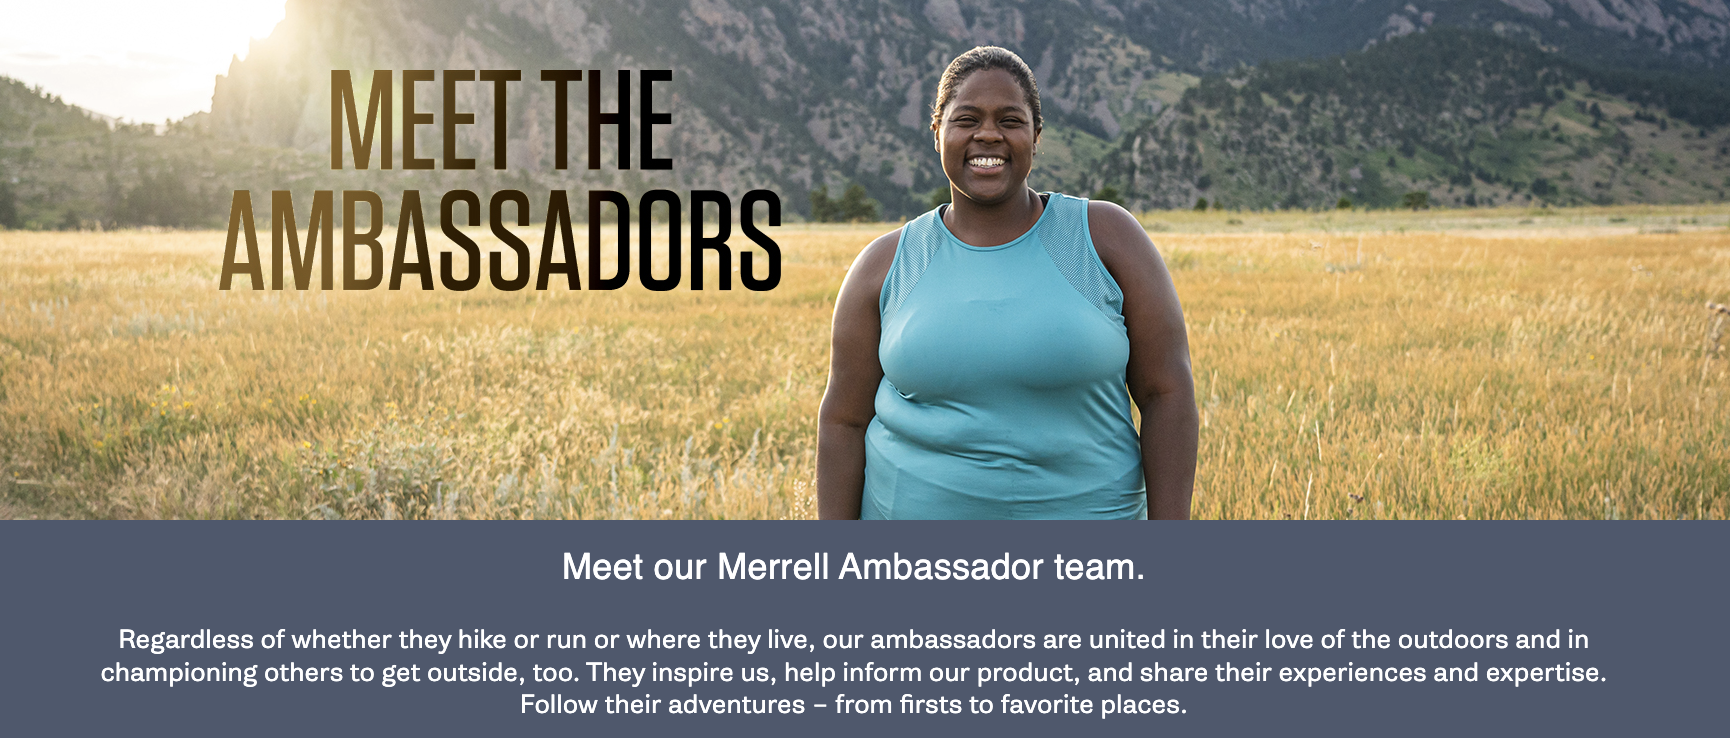 Merrell ambassadors